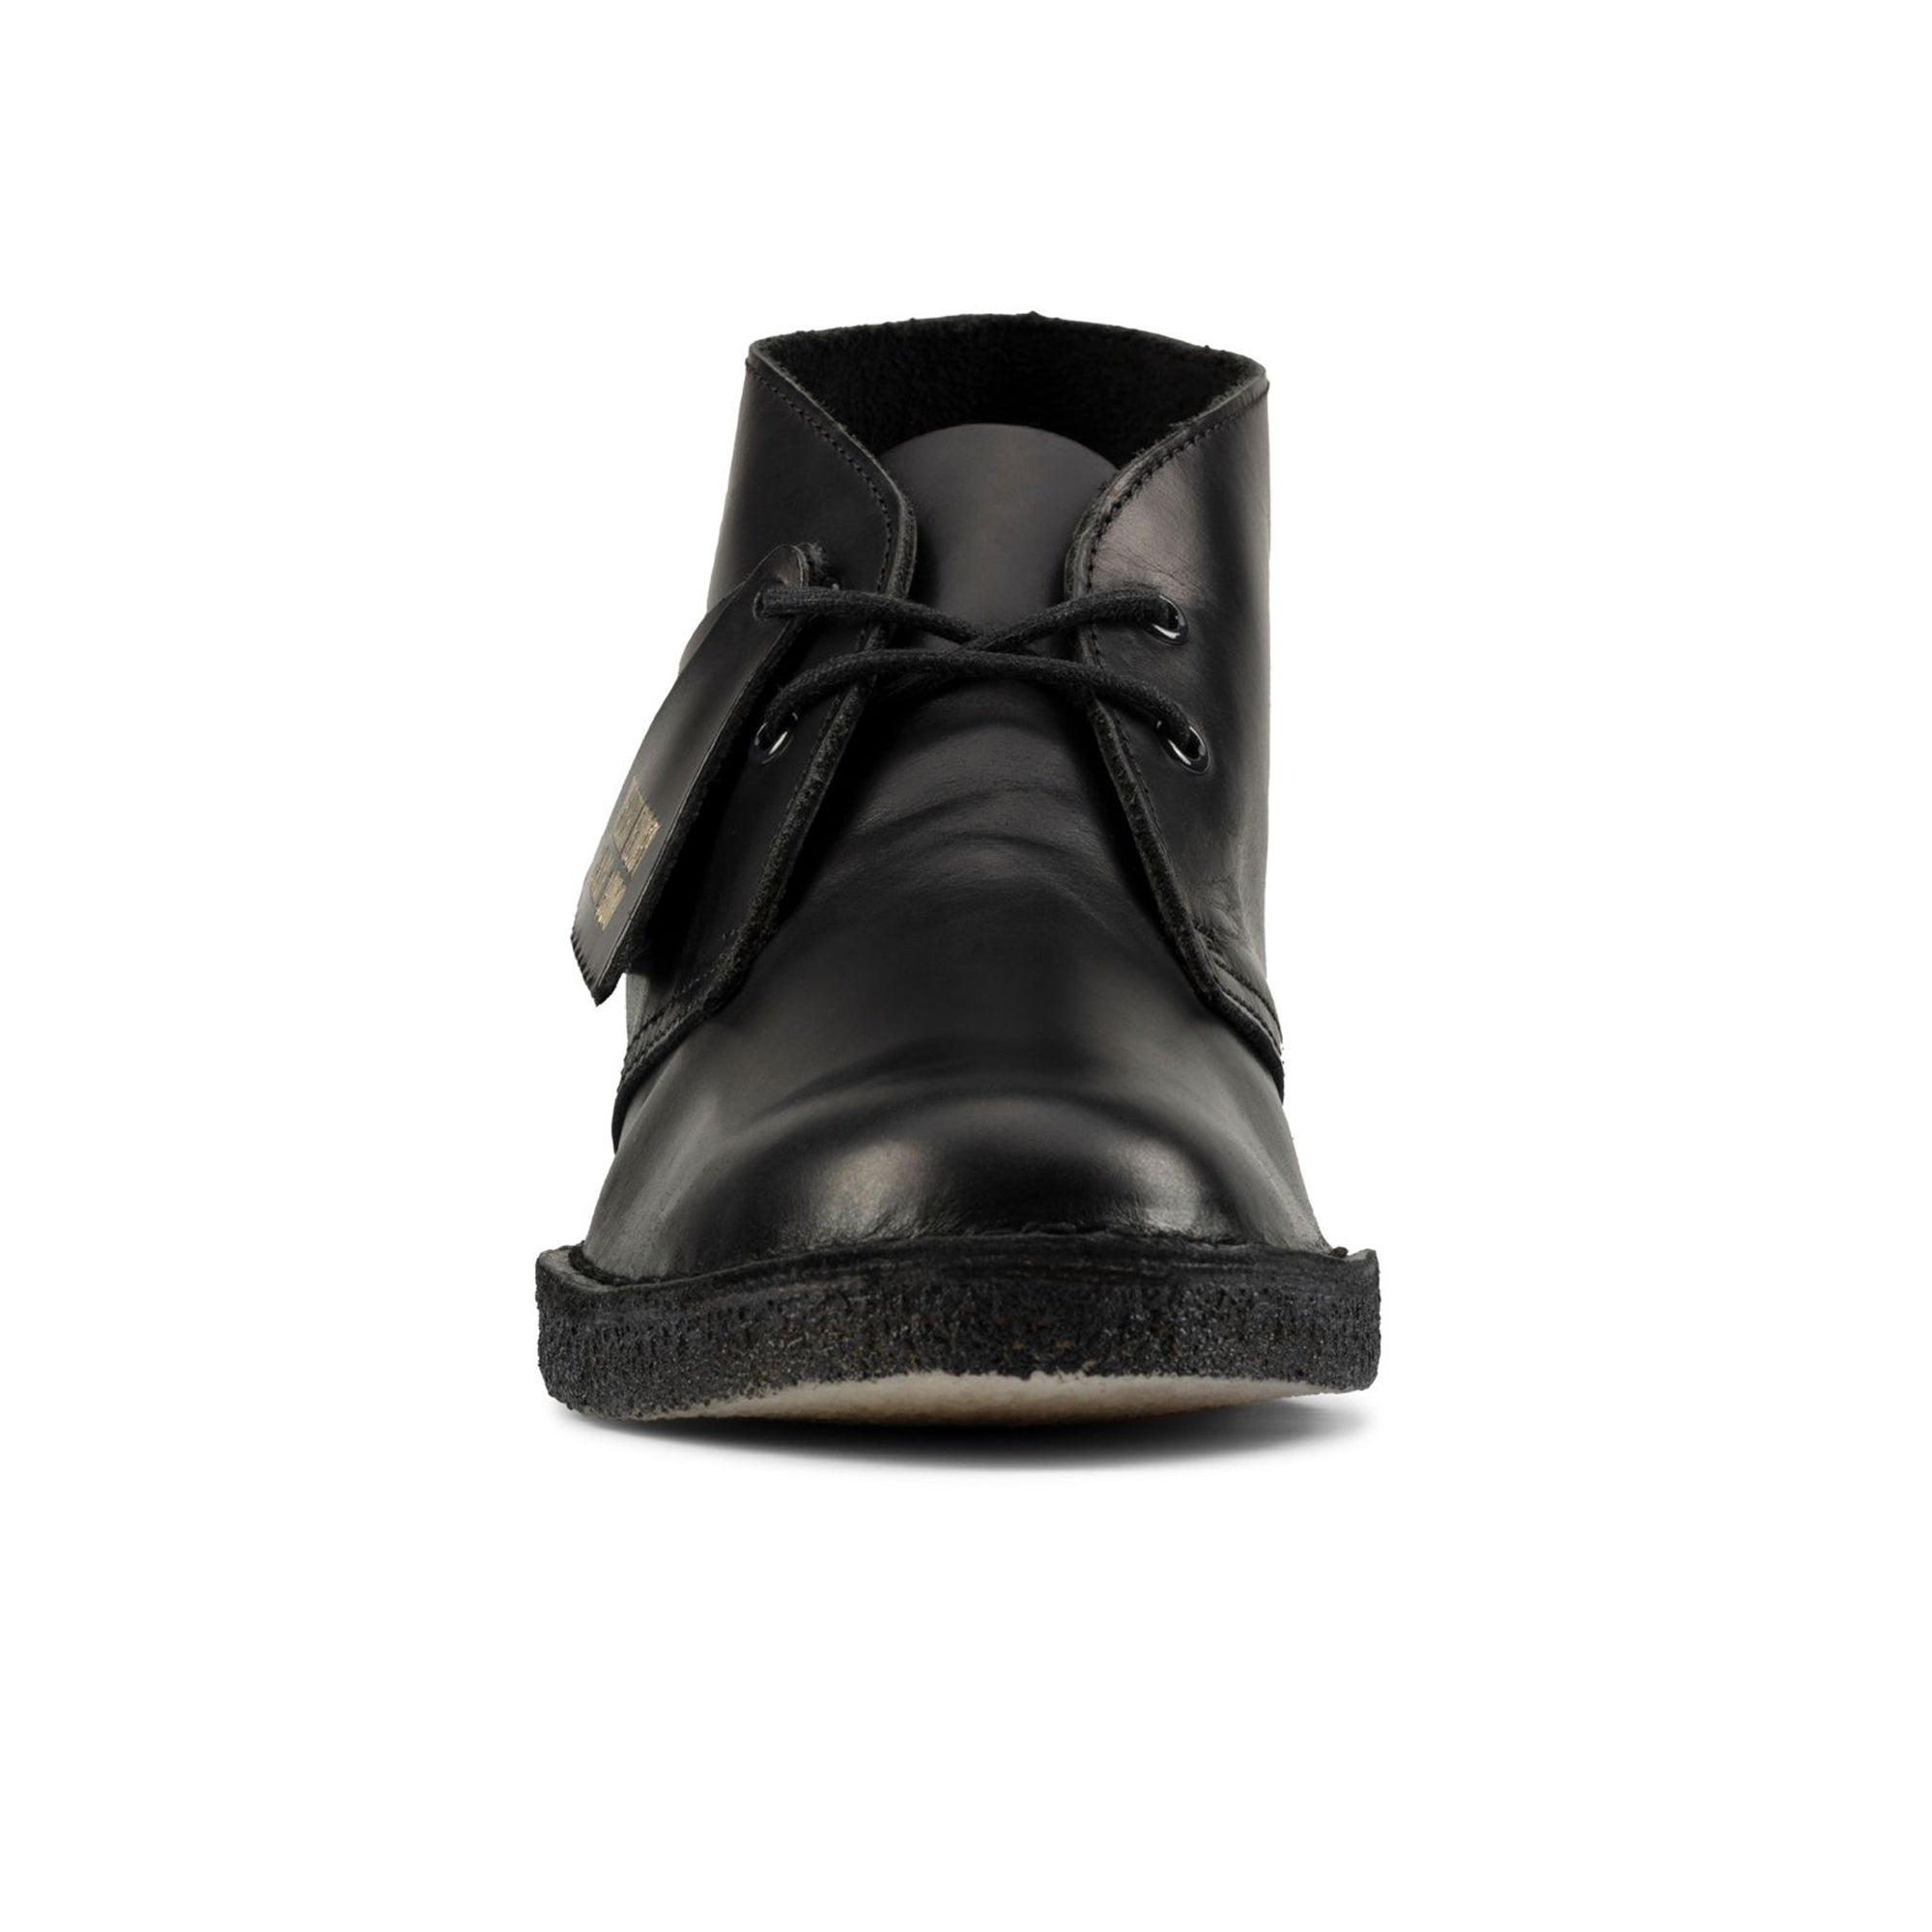 Clarks Originals New Desert Boot - Polished Black